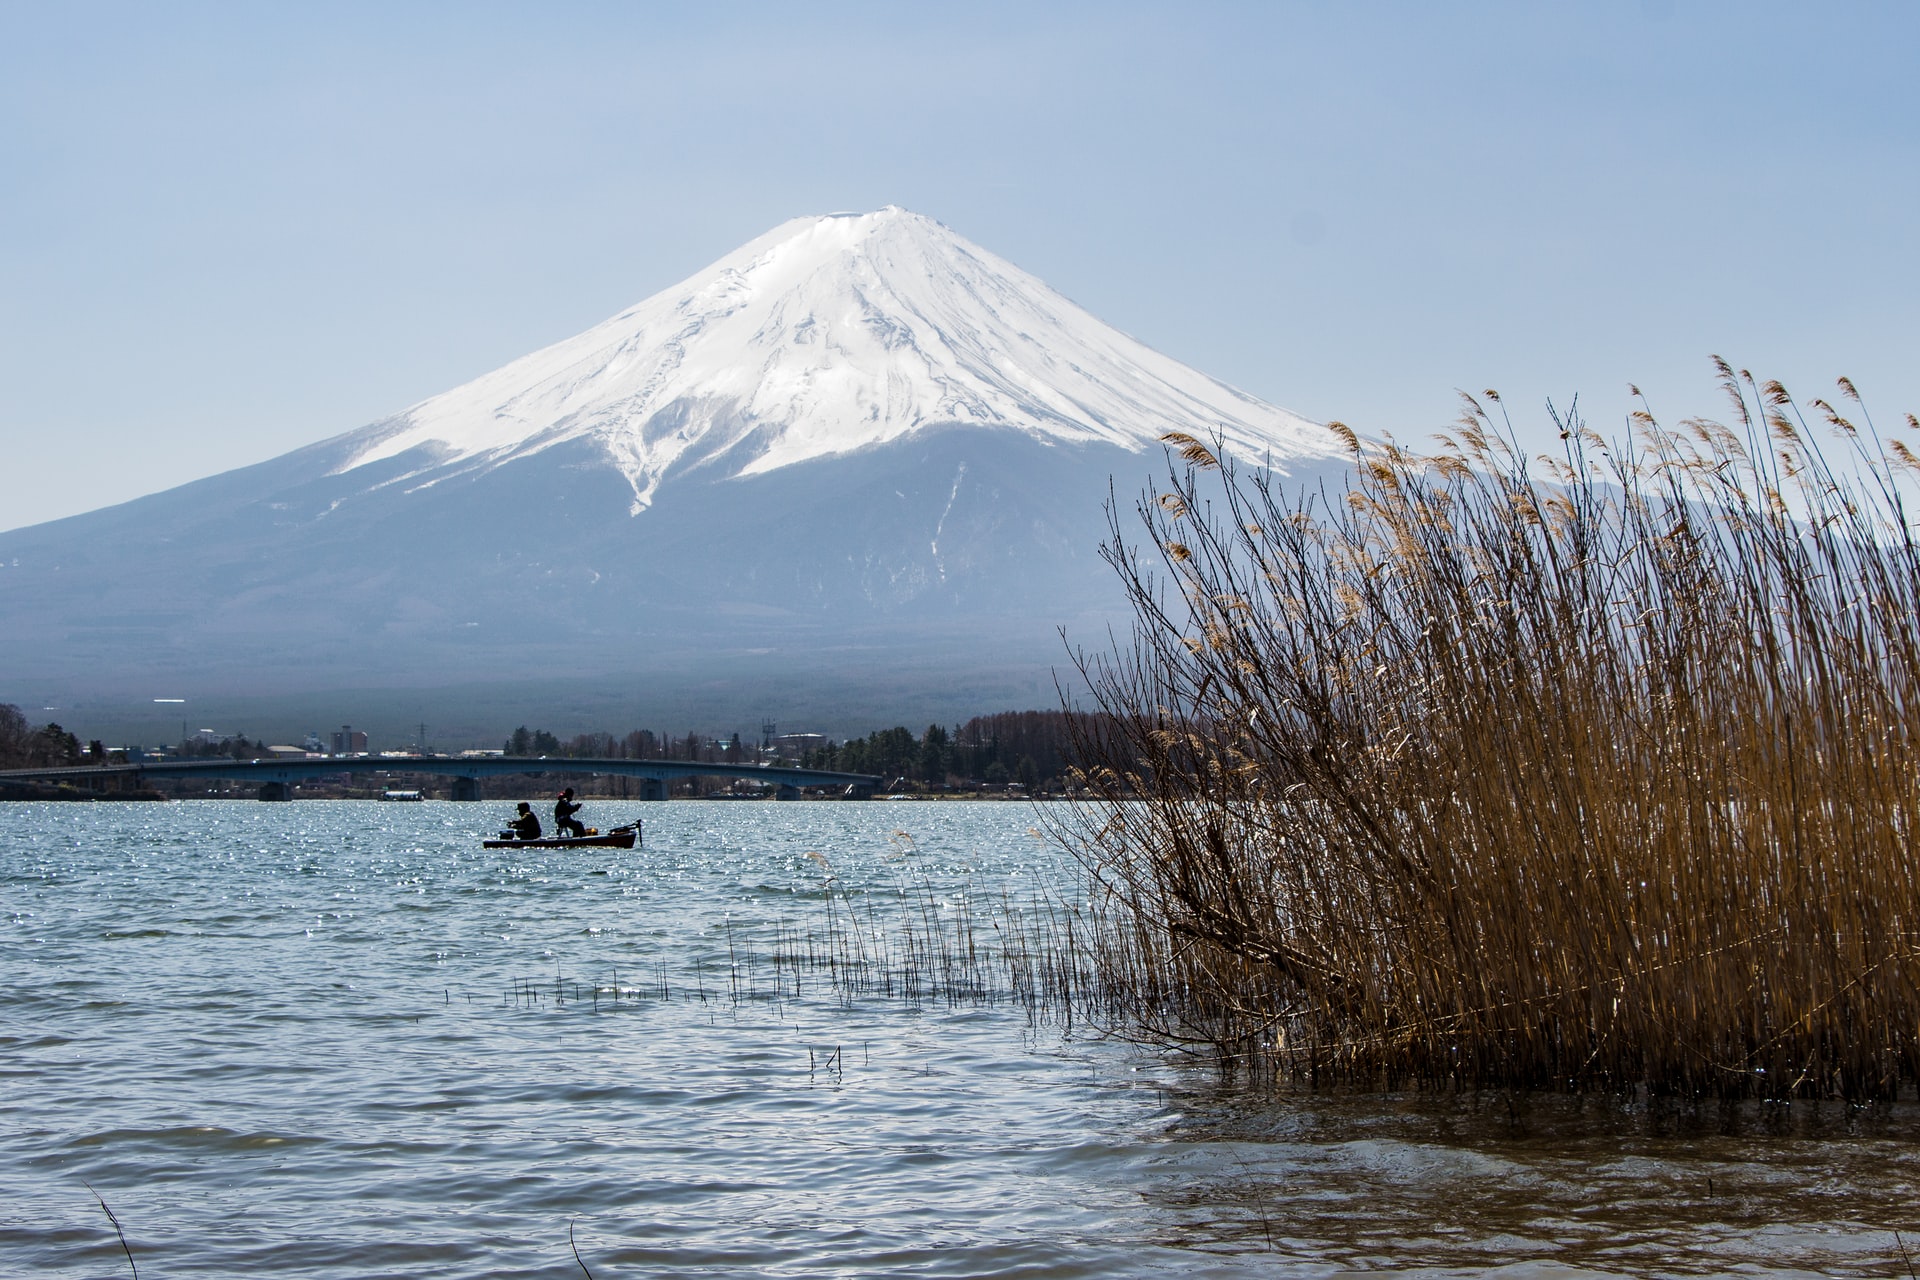 Monte Fuji: Centro informativo de la UNESCO